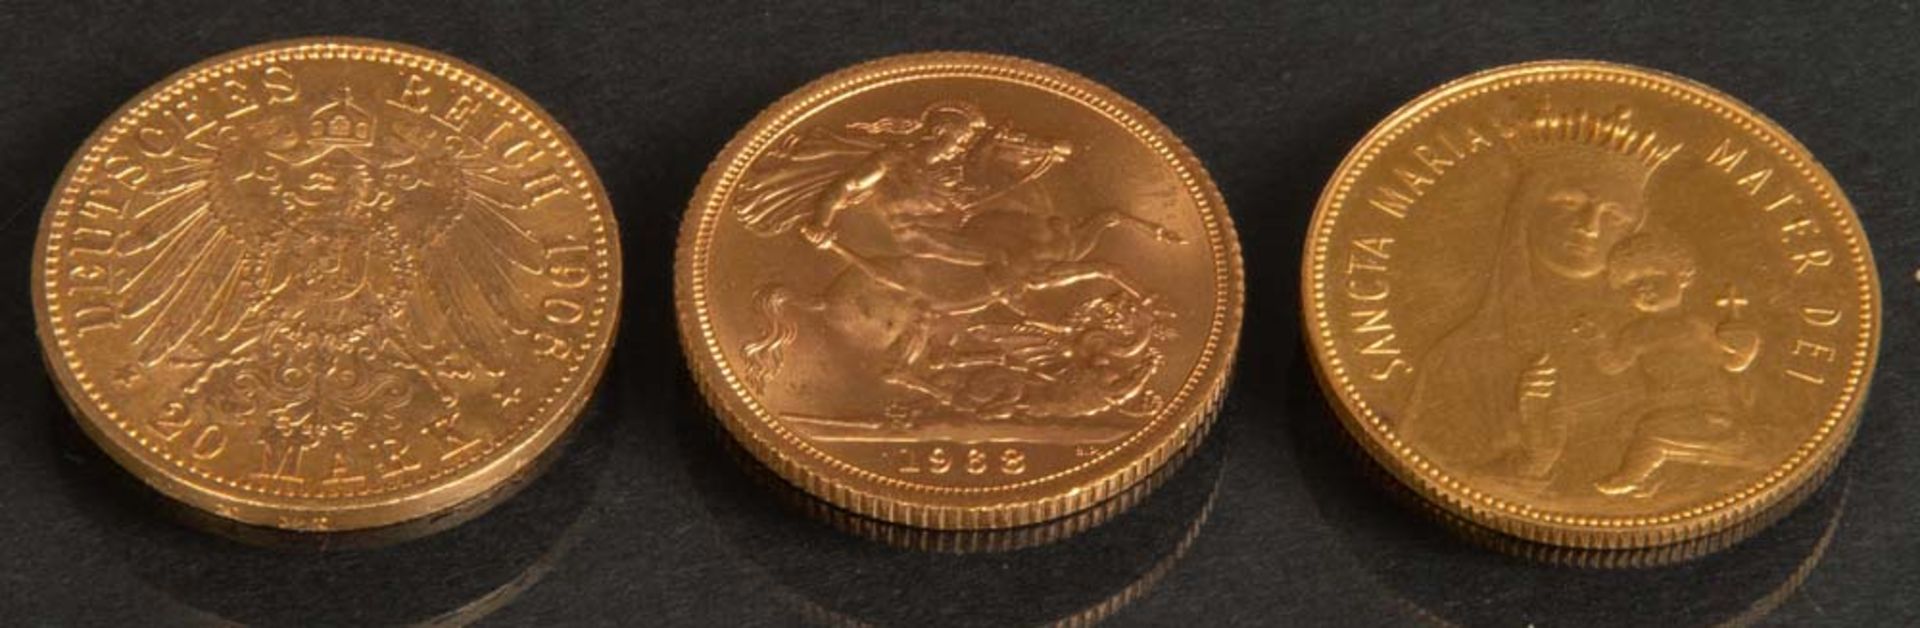 Drei Goldmünzen bzw. -medaillen „Elisabeth II Dei Grazia Regina 1968“, „Mater Dei Sancta Maria“, „20